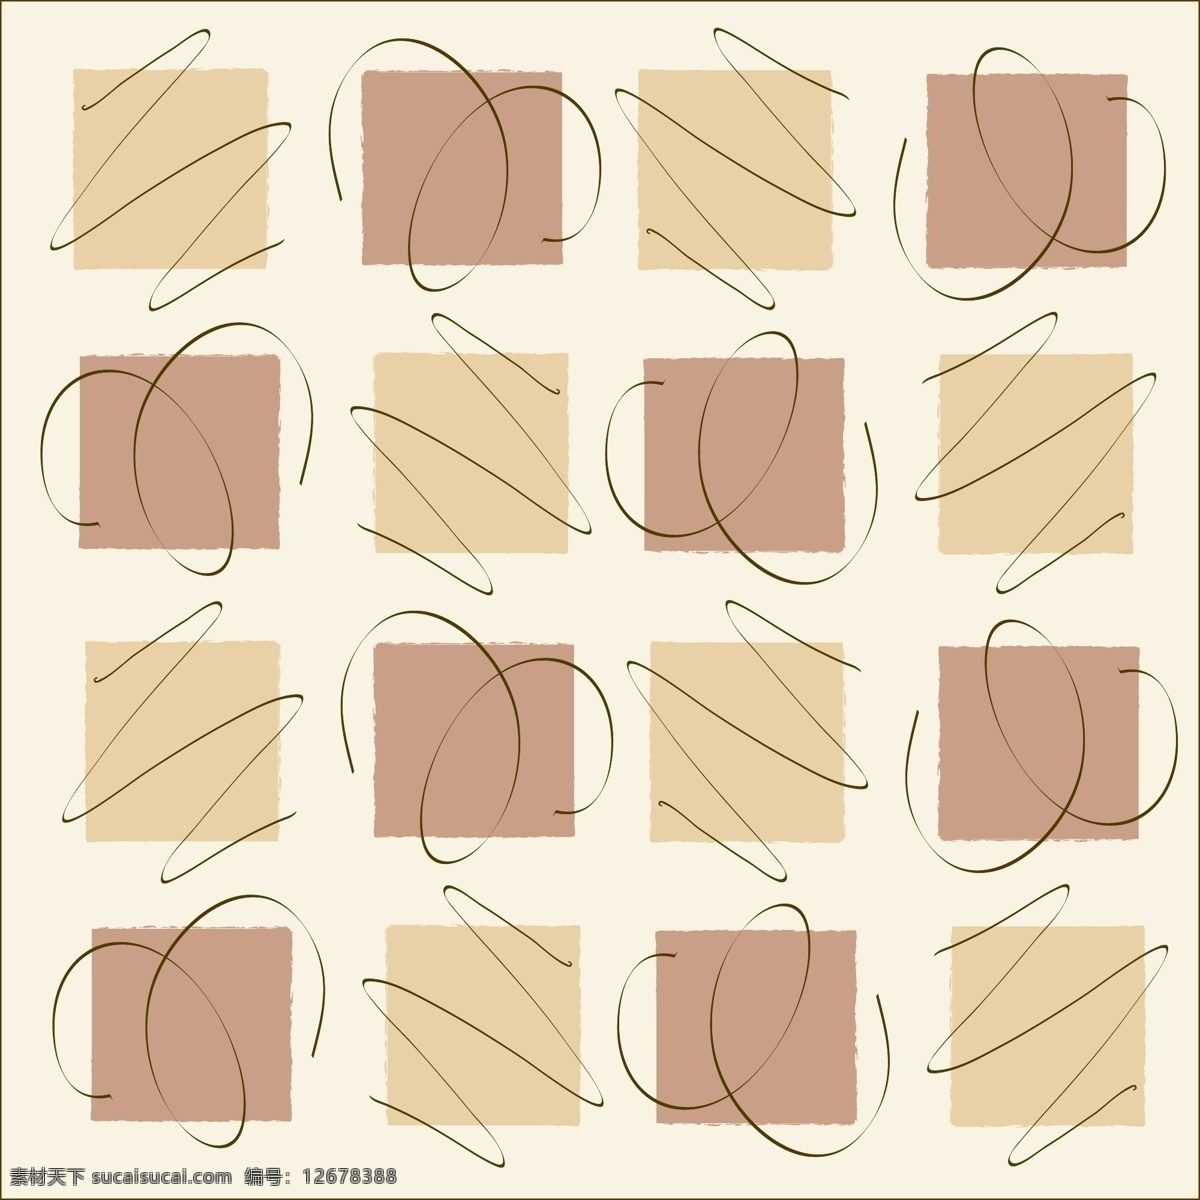 矢量 抽象 方块 线条 背景 花纹 连续 平铺 矢量素材 素雅 矢量图 花纹花边